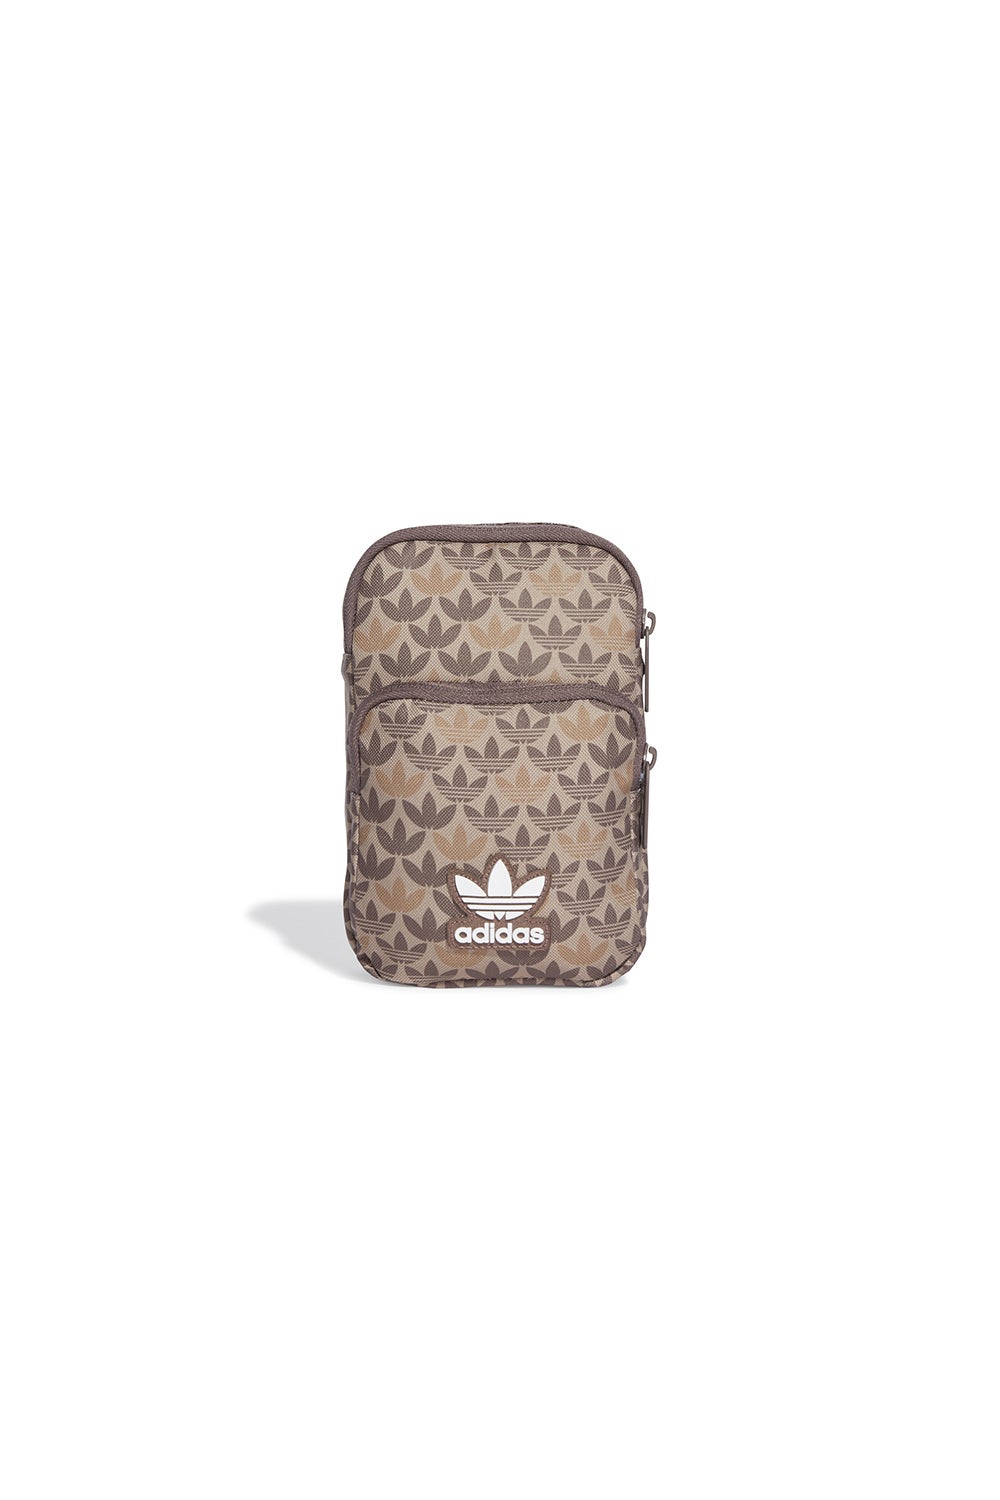 Gucci | Bags | Gucci Adidas Gg Crystal Canvas Leather Shoulder Crossbody  Bag | Poshmark